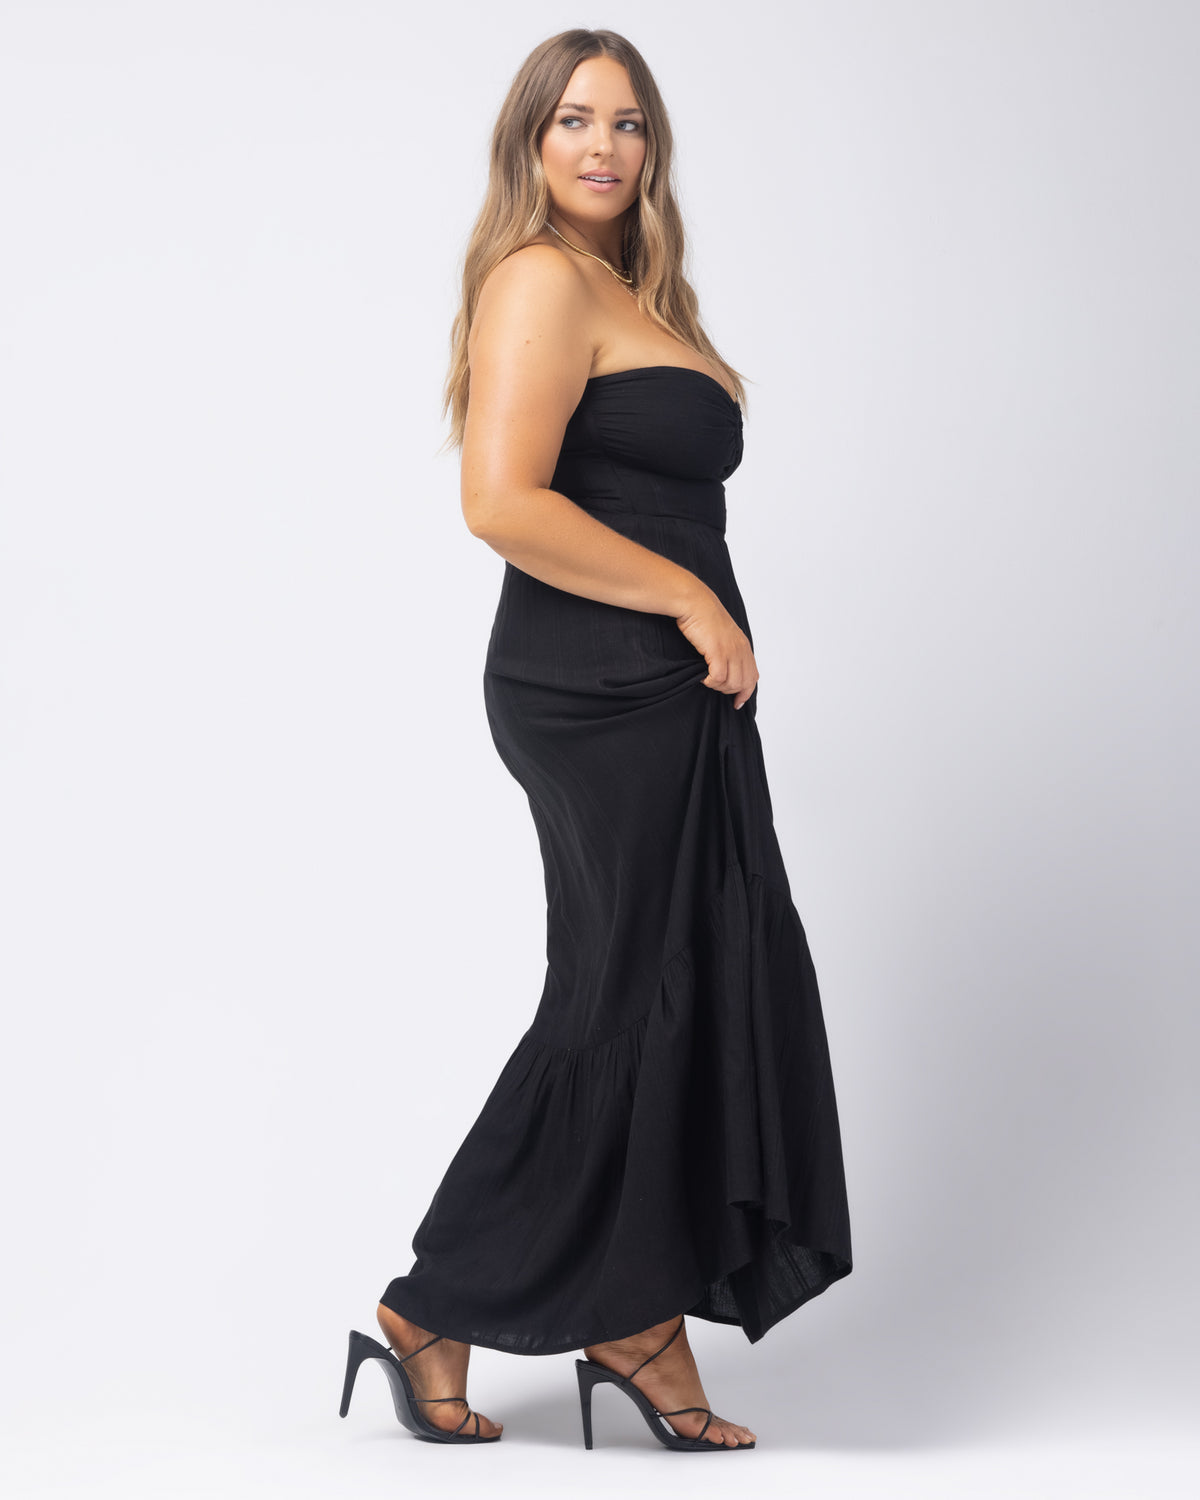 Melody Dress - Black Black | Model: Ali (size: XL)